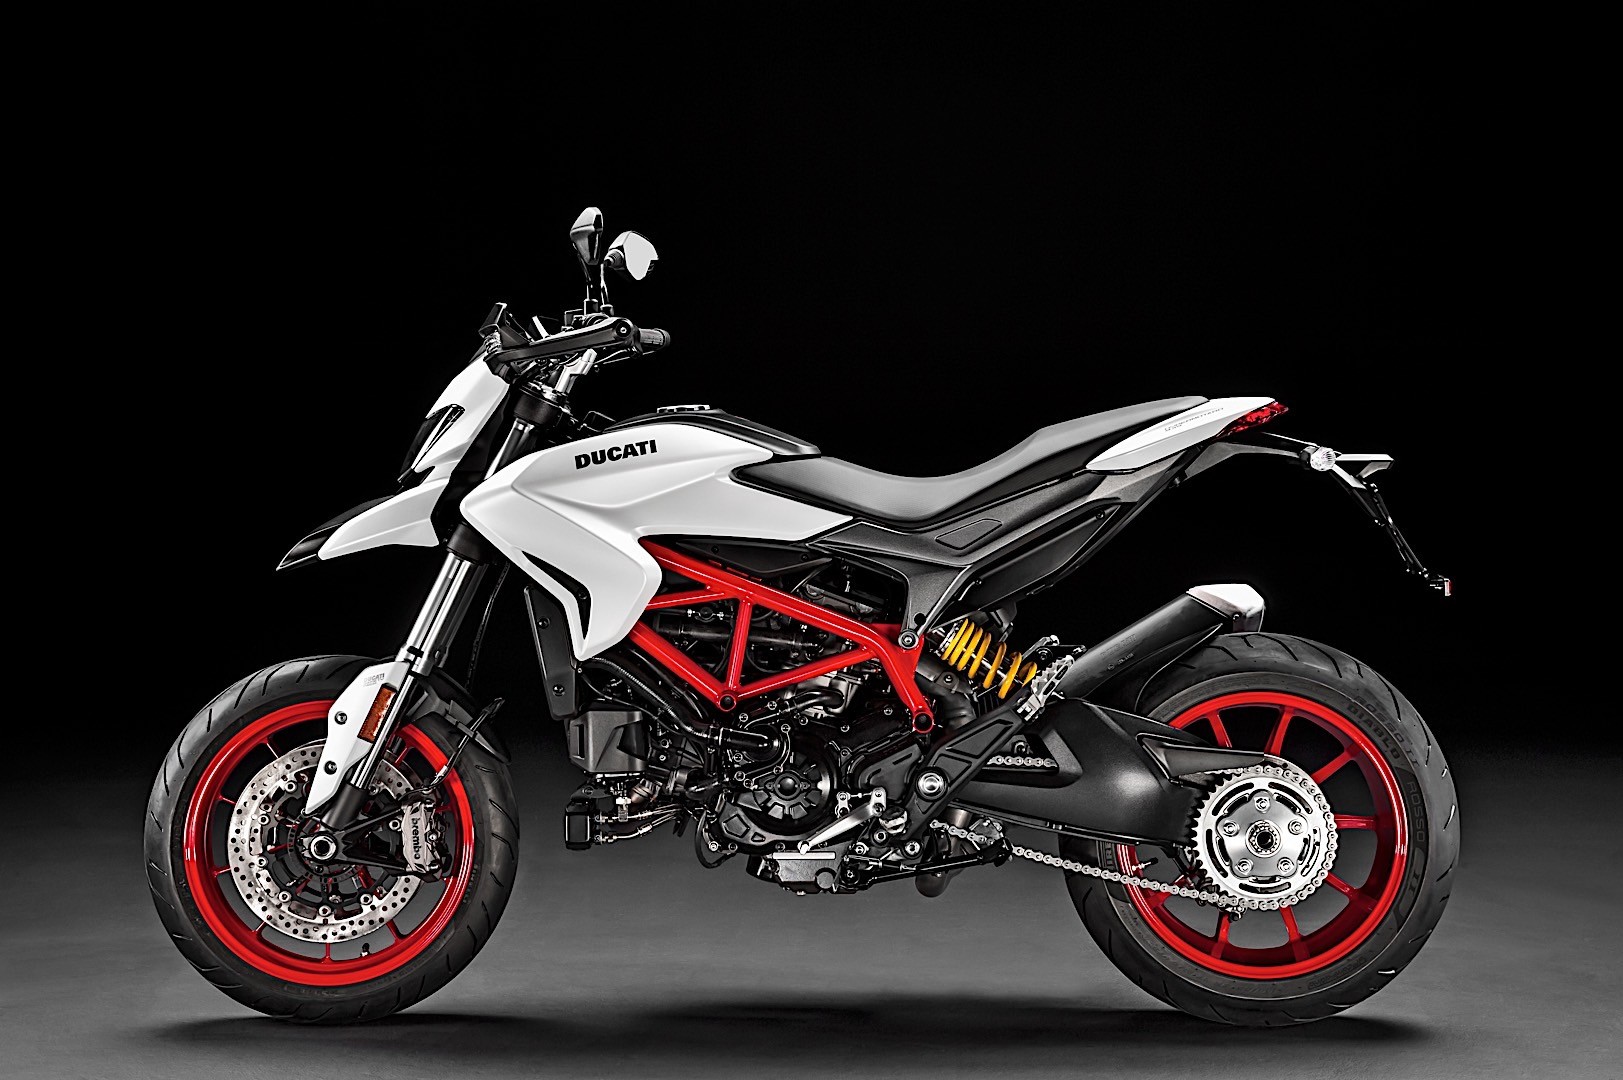 Ducati Hypermotard 939 2018 có thêm màu sơn trắng nổi bật